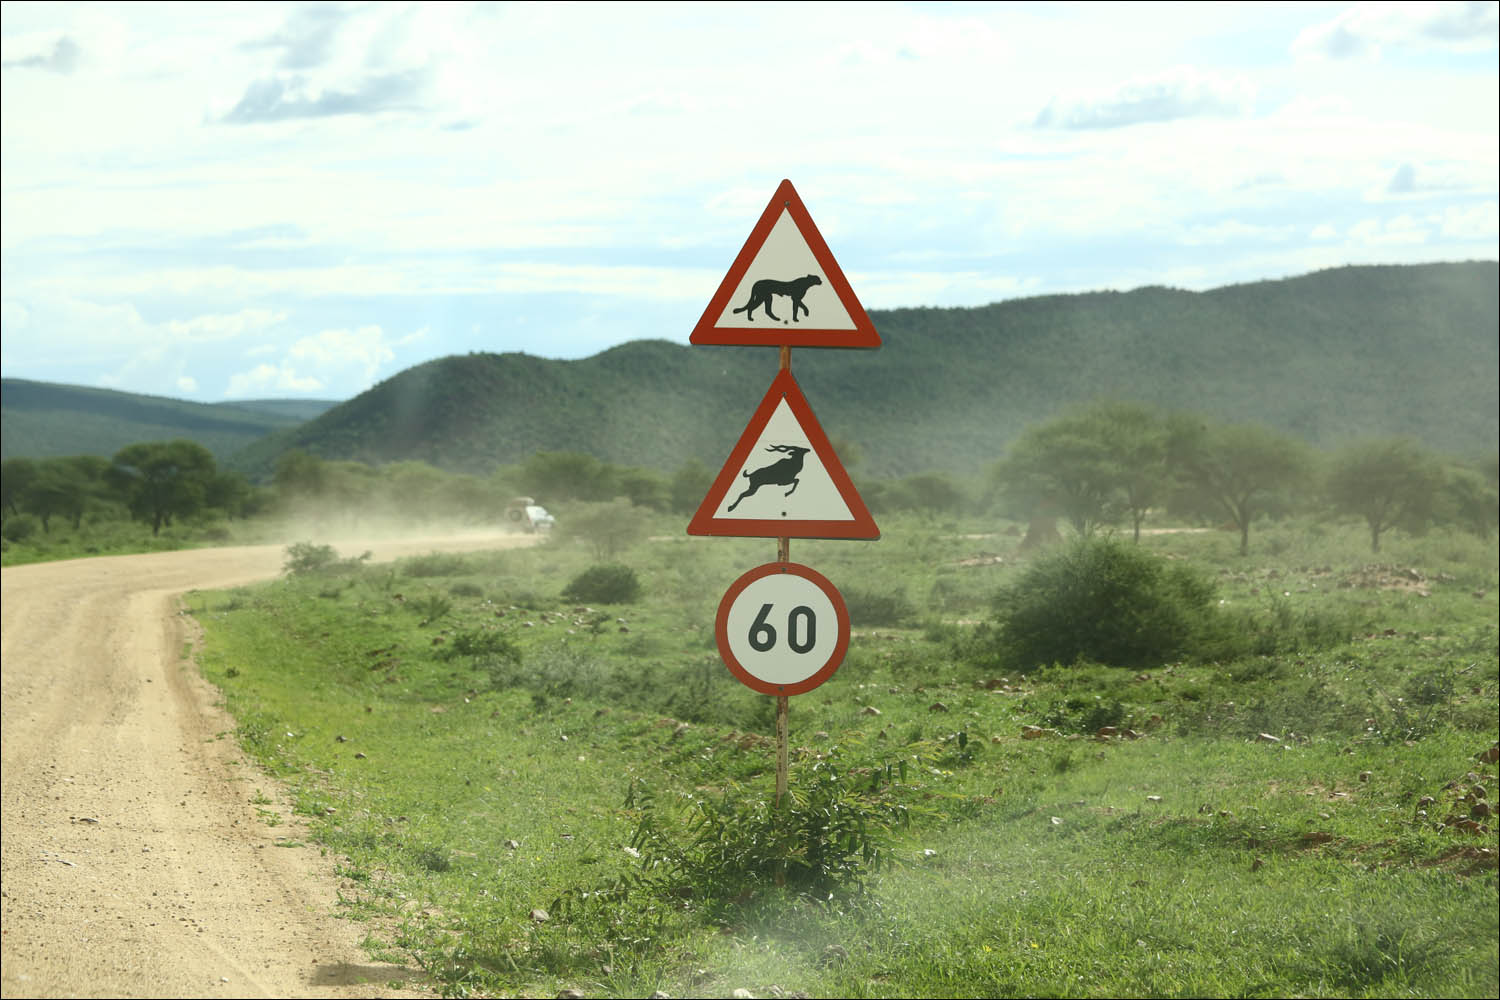 Намибия: инфраструктура и что лучше знать до поездки - 15